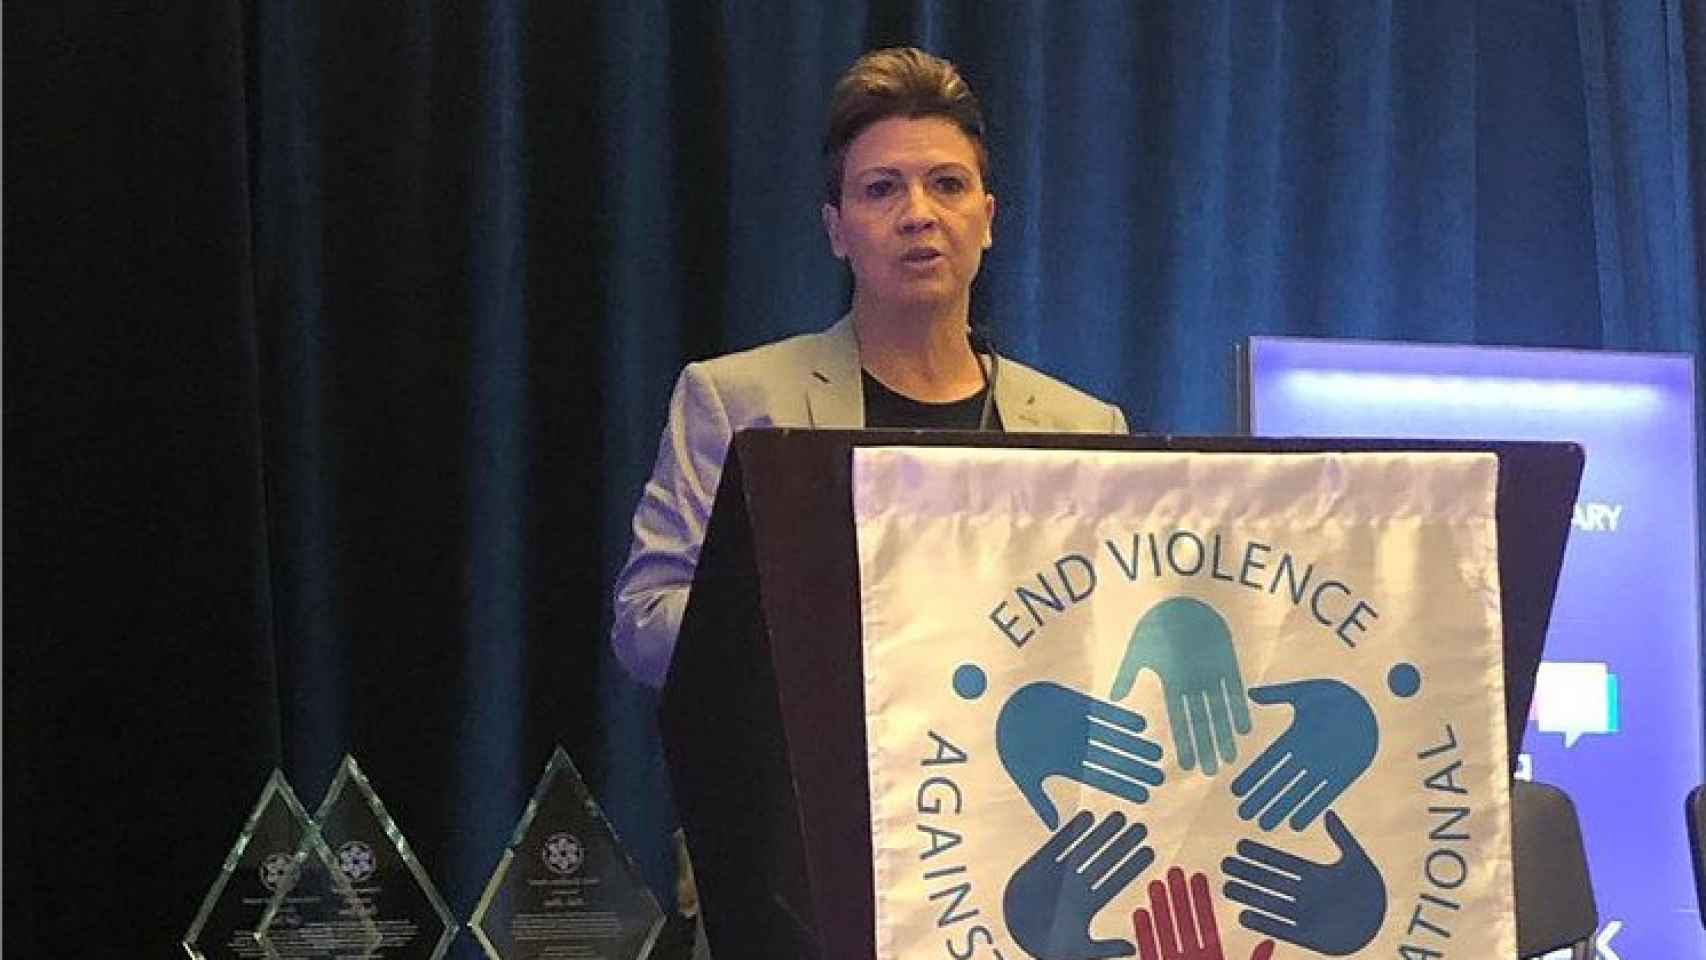 Tracey Breeden representando a Uber la Conferencia Internacional por el Fin de la Violencia contra la Mujer, en 2019.